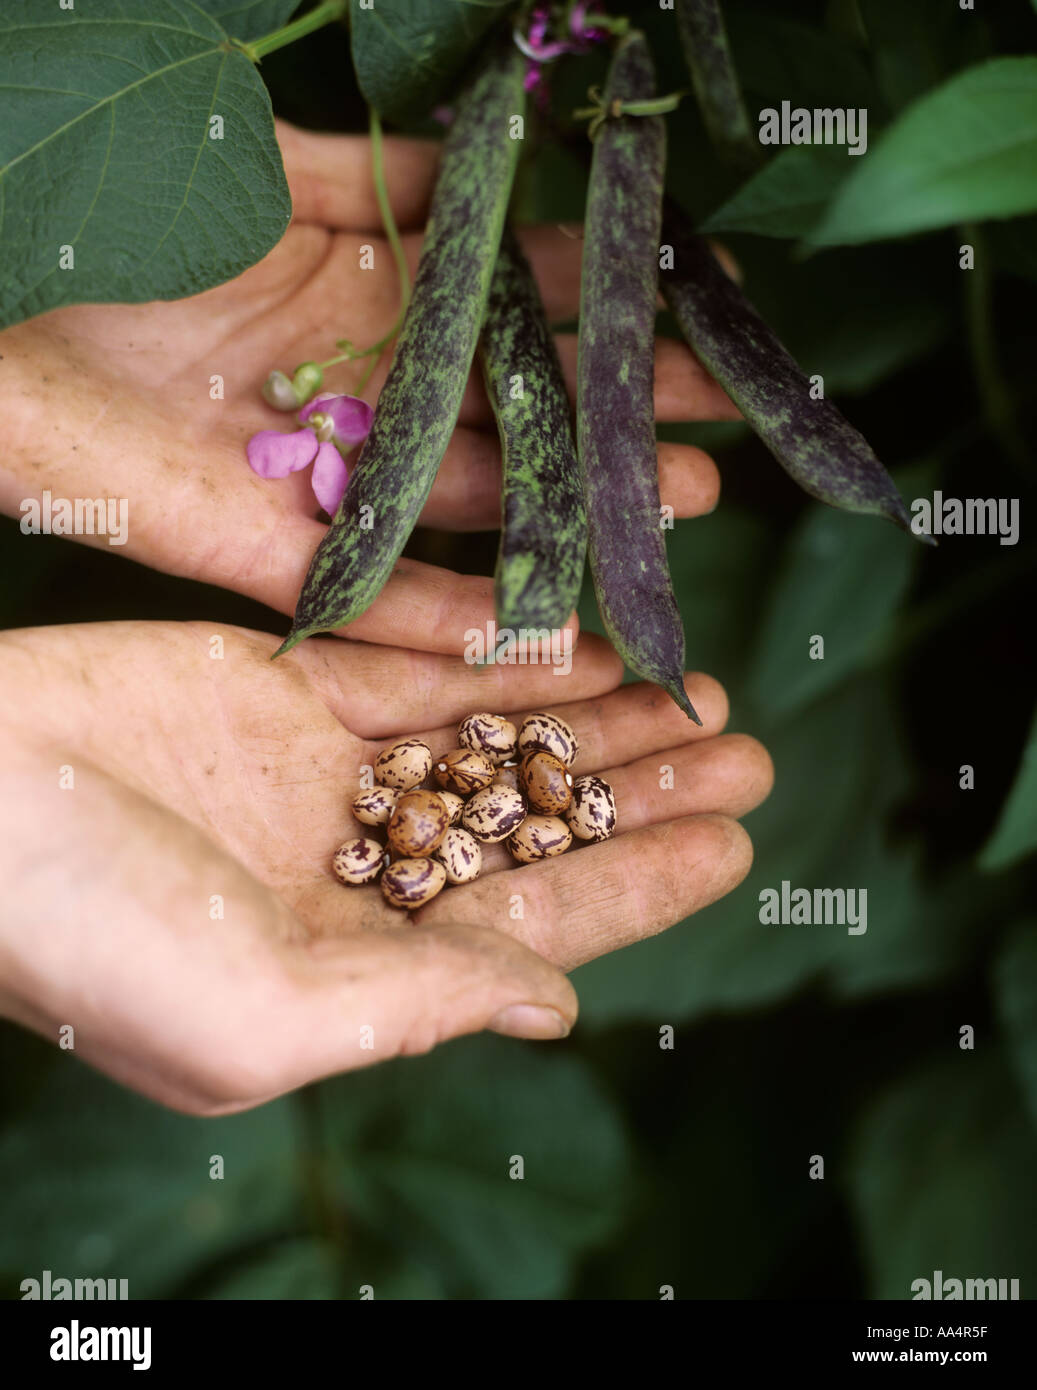 Organici di fagioli francesi CHEROKEE Sentiero delle Lacrime che cresce su canne in giardino che mostra fiori di colore rosa e semi di mani Foto Stock